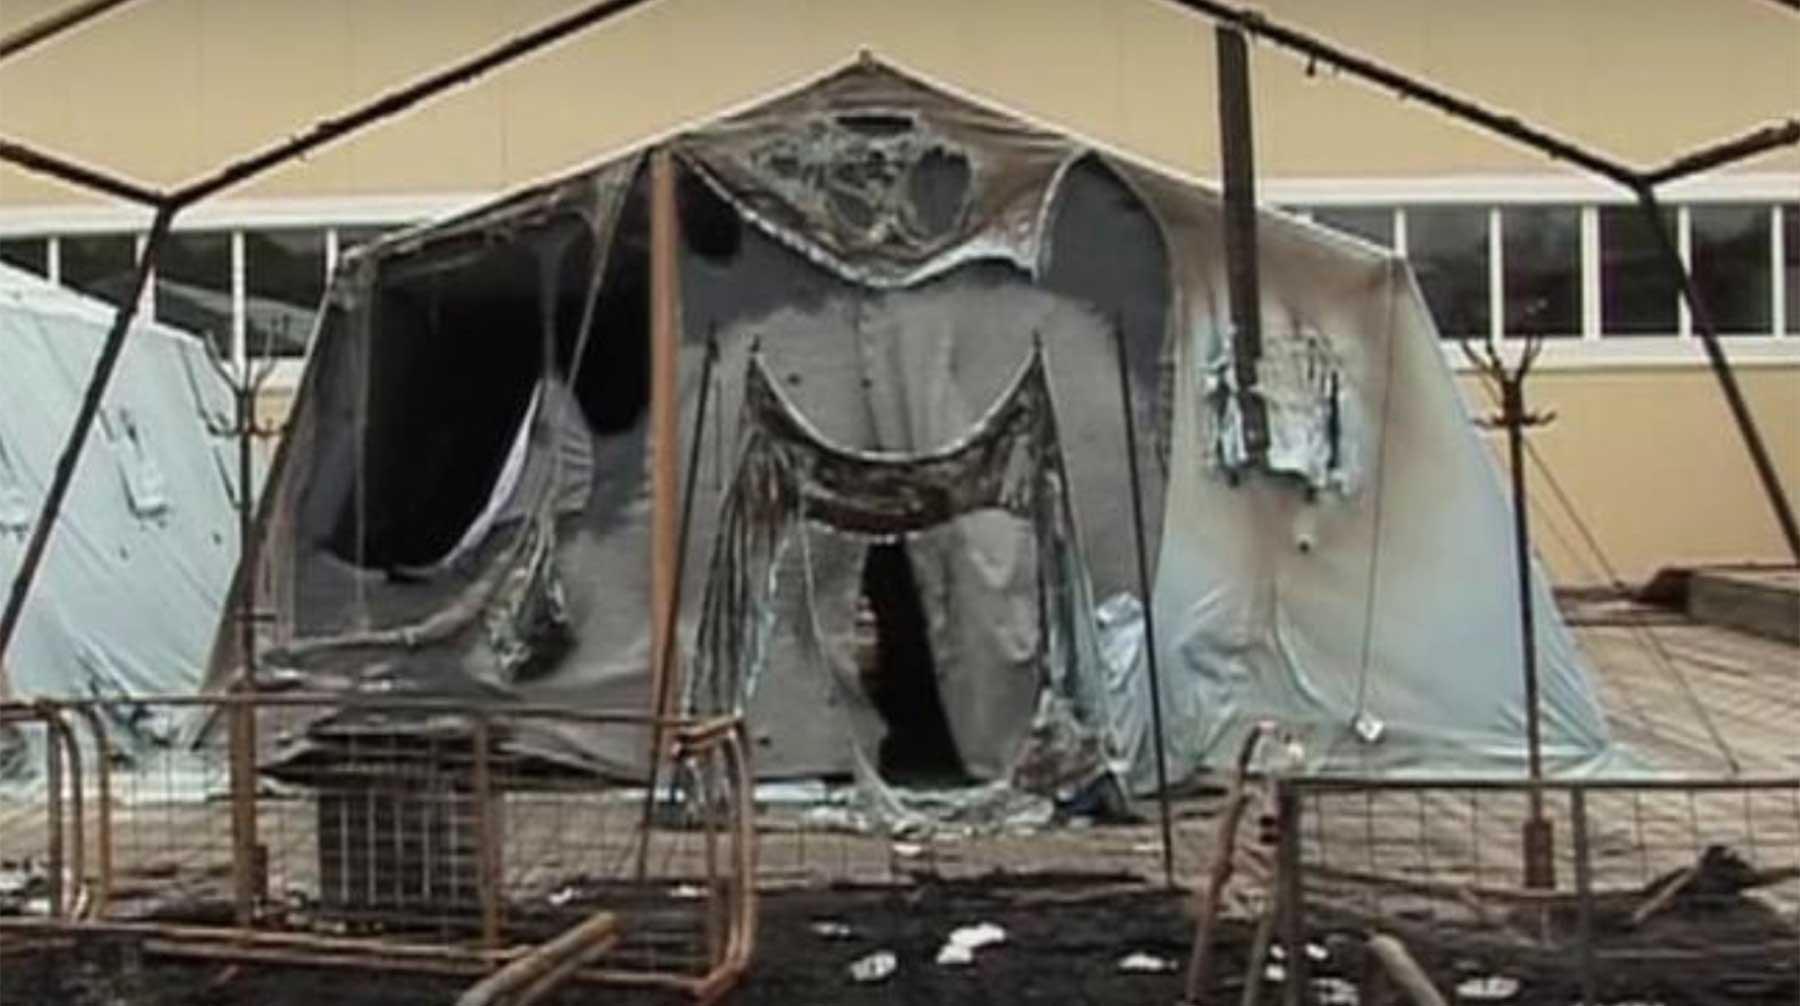 Dailystorm - Лагерь «Холдоми» в Хабаровском крае закроют после гибели детей при пожаре